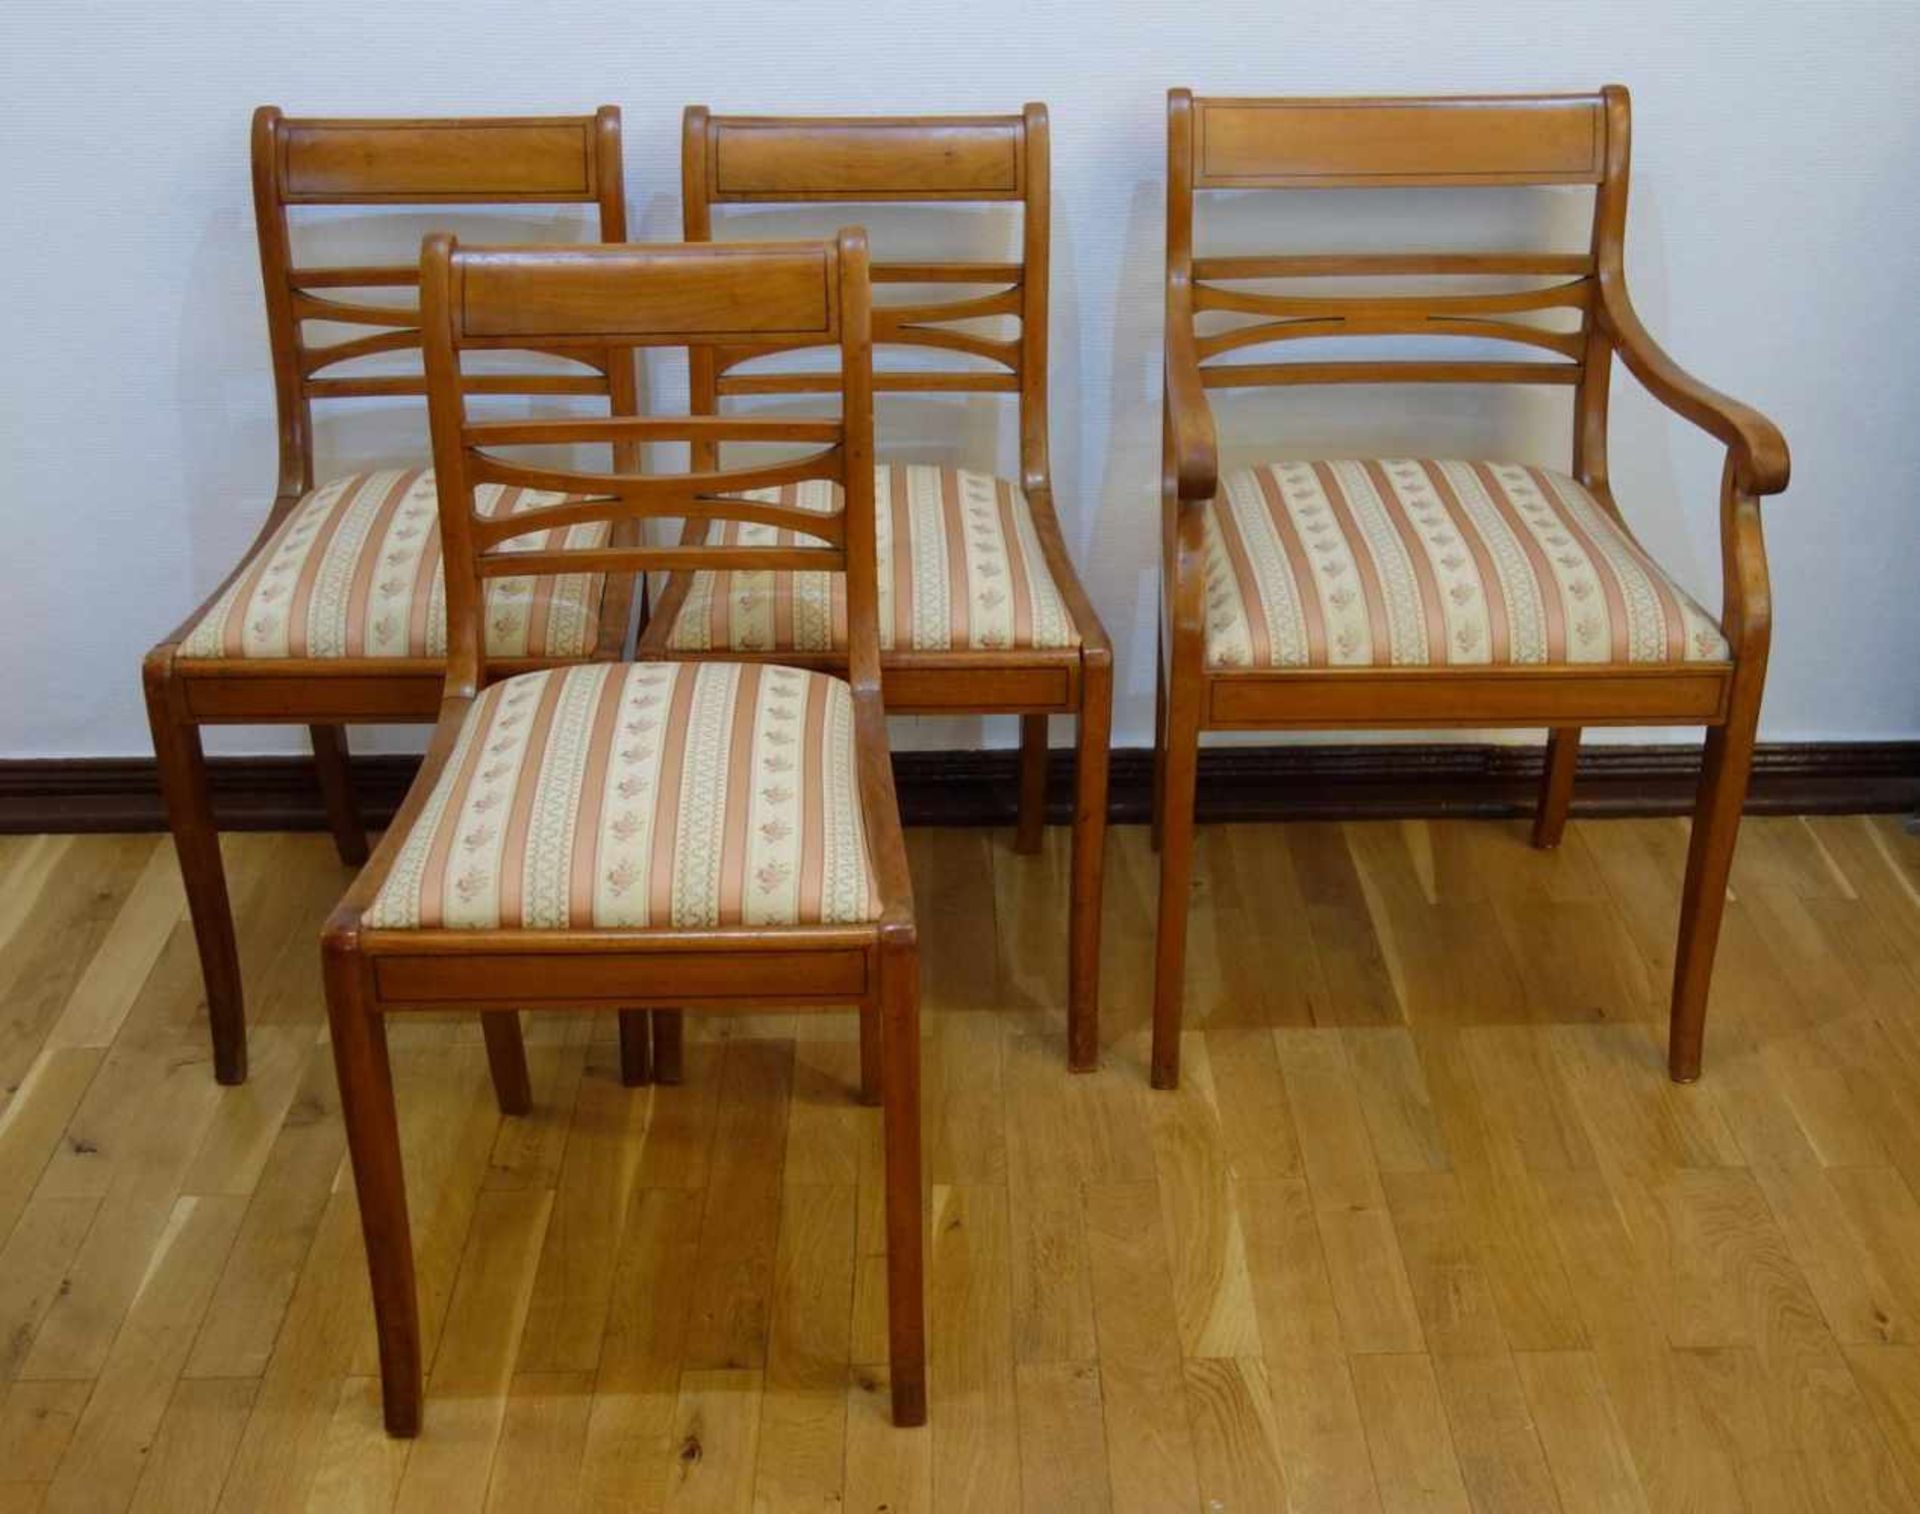 3 Stühle und ein Armlehnstuhl, Biedermeier-Stil, 20er/30er Jahre Kirsche, gepolsterte Sitzfläche,